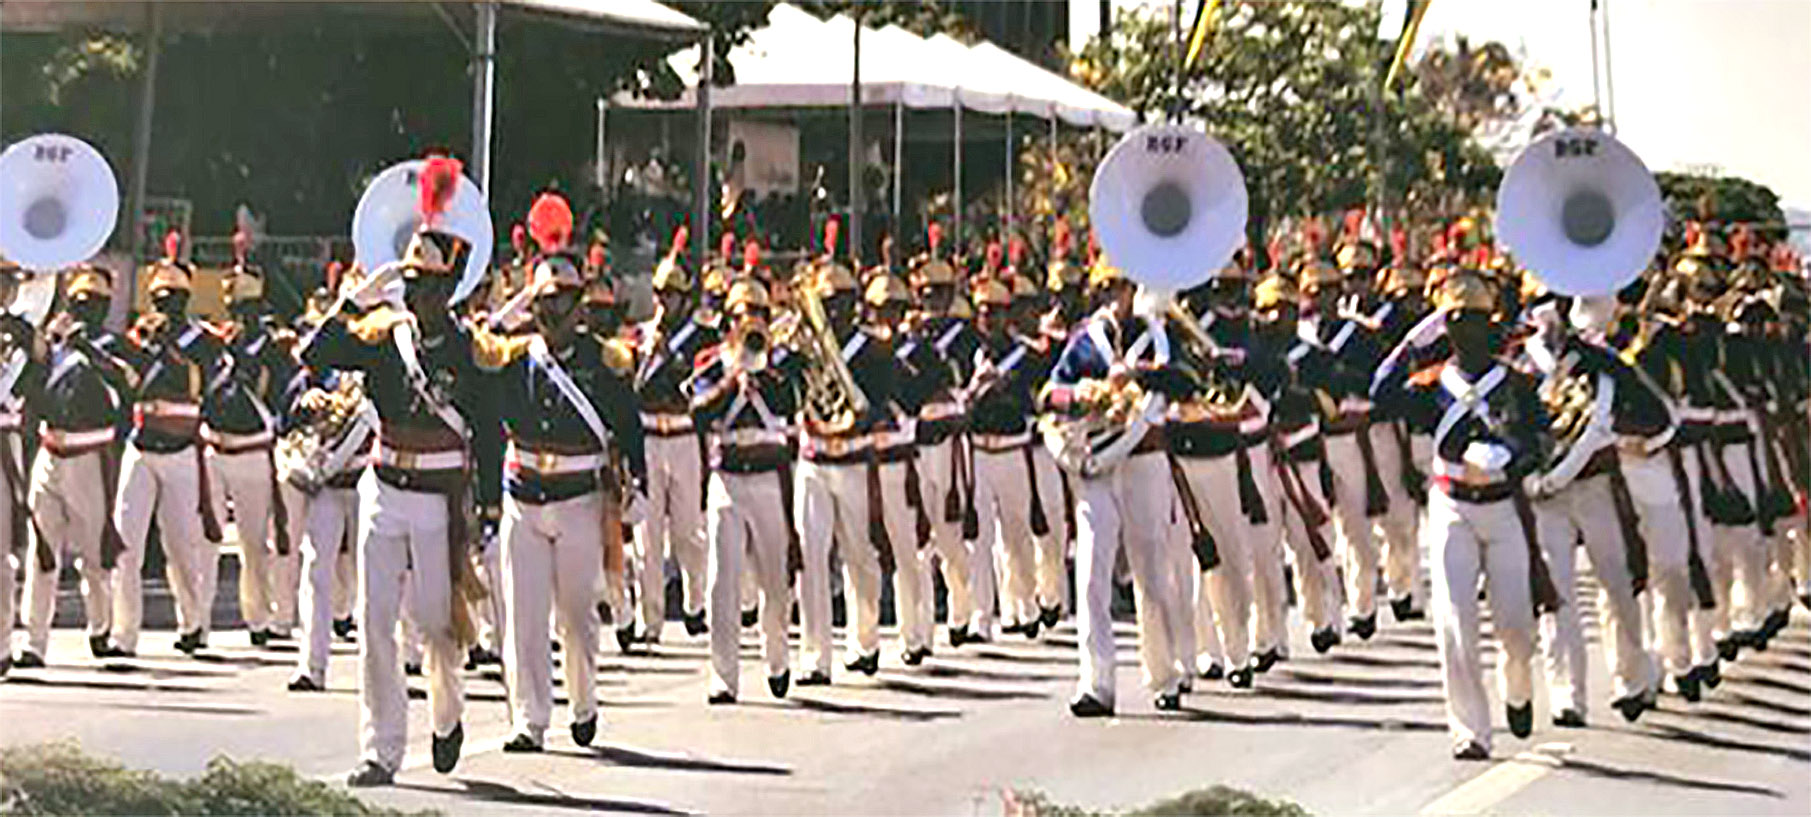 Banda de Música do BGP-Batalhão da Guarda Presidencial (Foto: Reprodução)